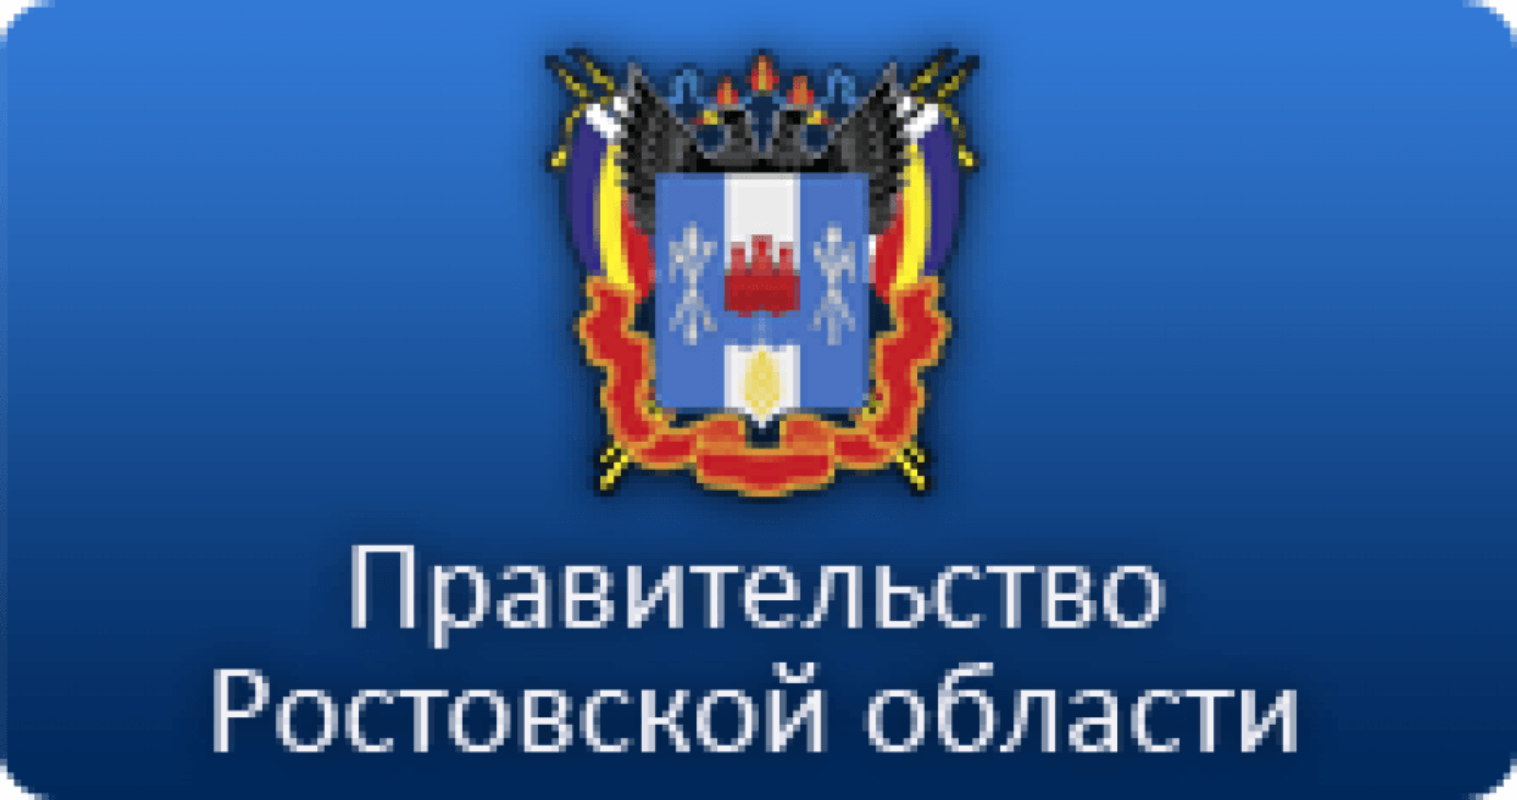 Региональный портал ростовской области